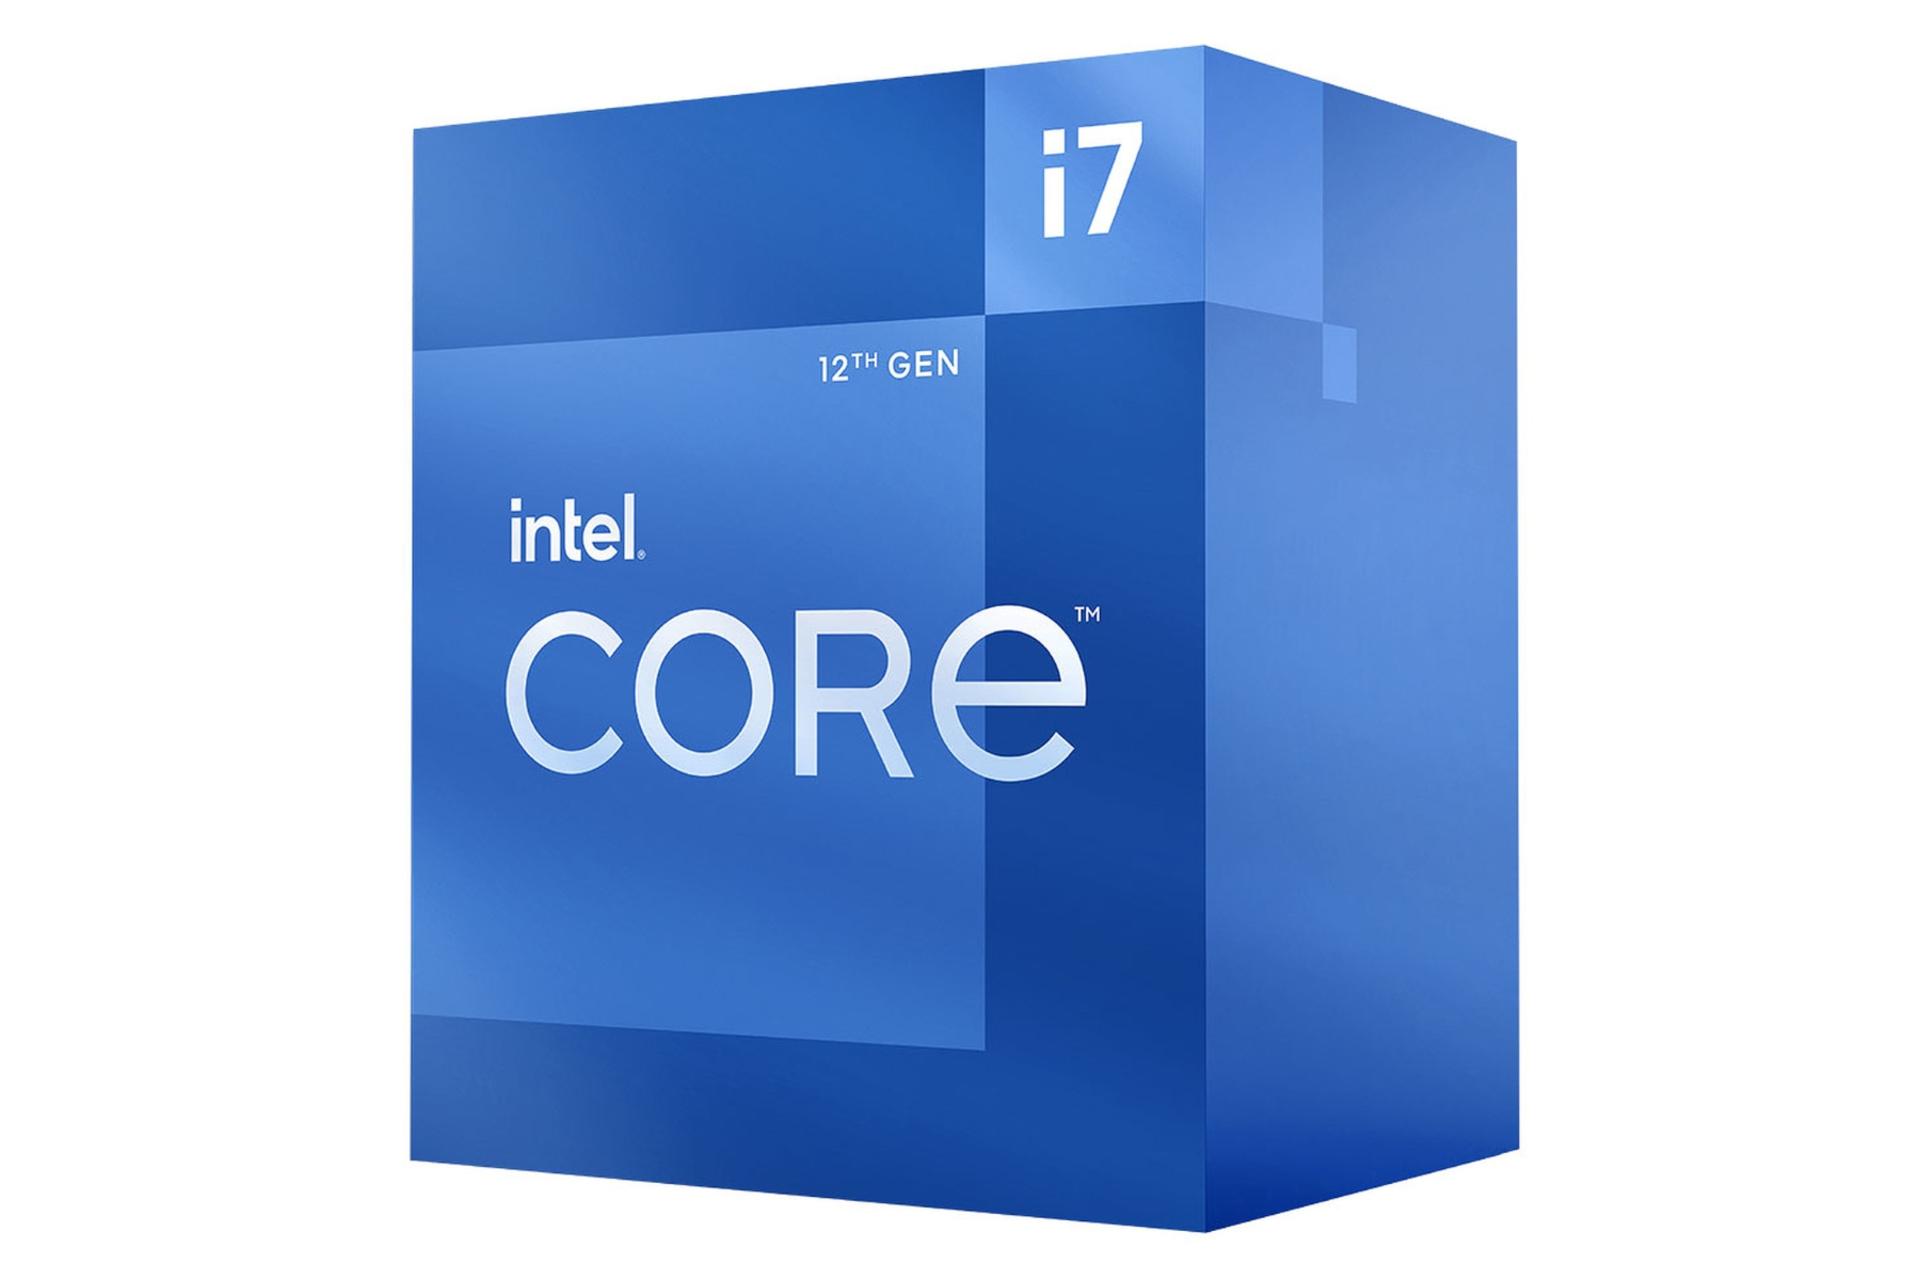 مرجع متخصصين ايران نماي راست جعبه پردازنده اينتل Core i7 نسل دوازدهم / Intel Core i7 12th Gen